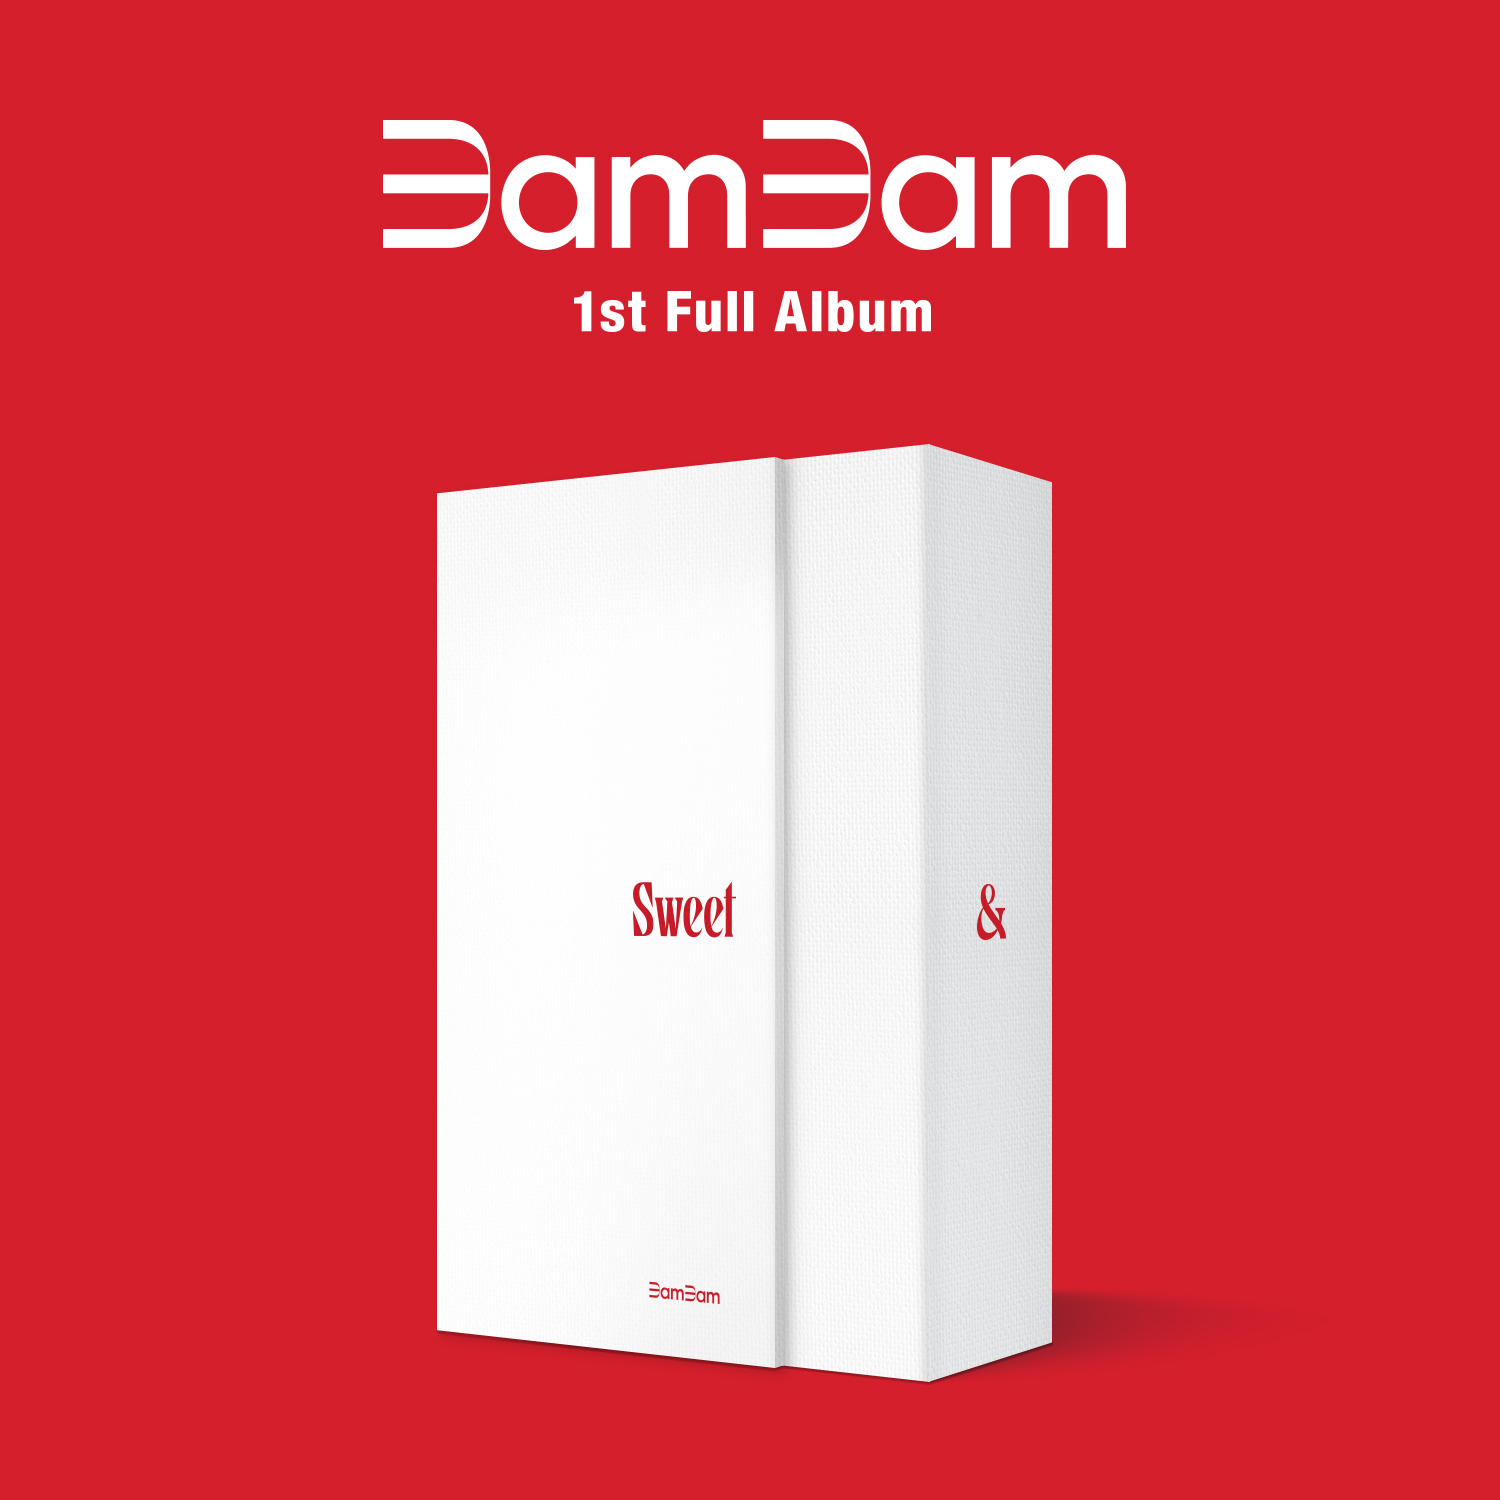 [Ktown4u POB] BamBam - 1st Full Album [Sour & Sweet] (Sweet Ver.)